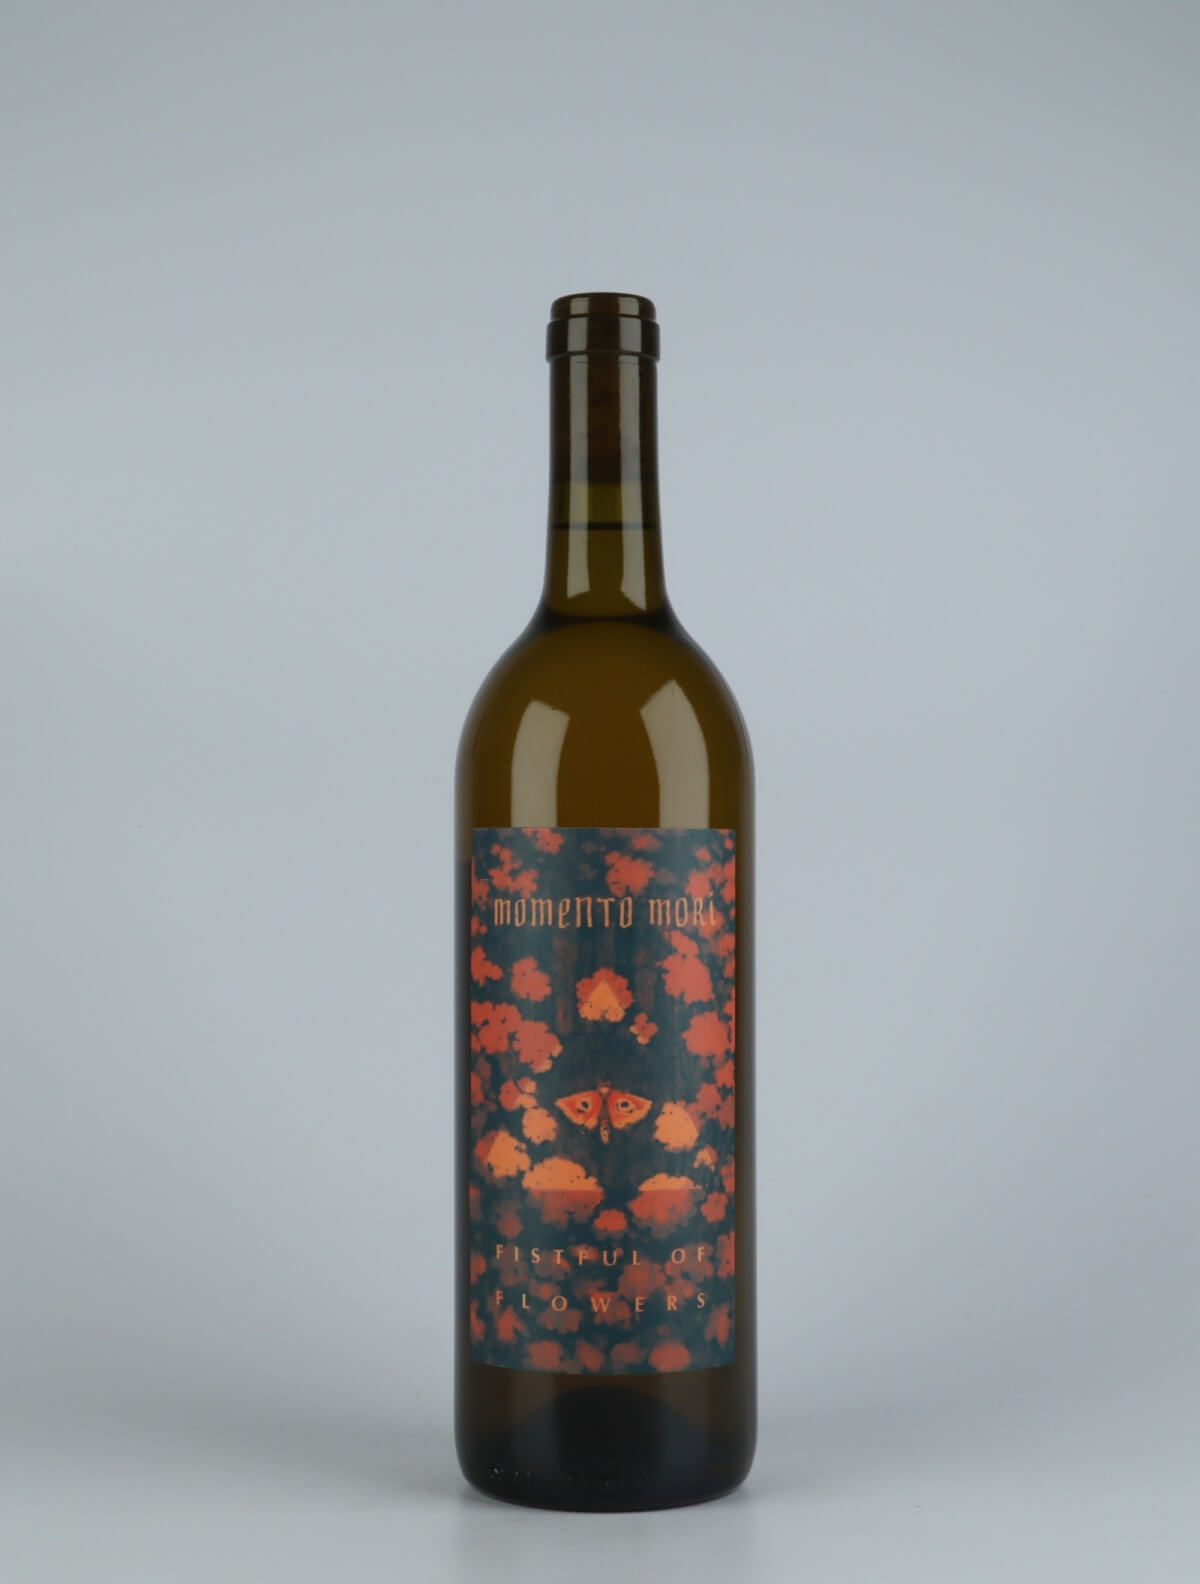 A bottle 2020 Fistful of Flowers Orange wine from Momento Mori, Victoria in Australia